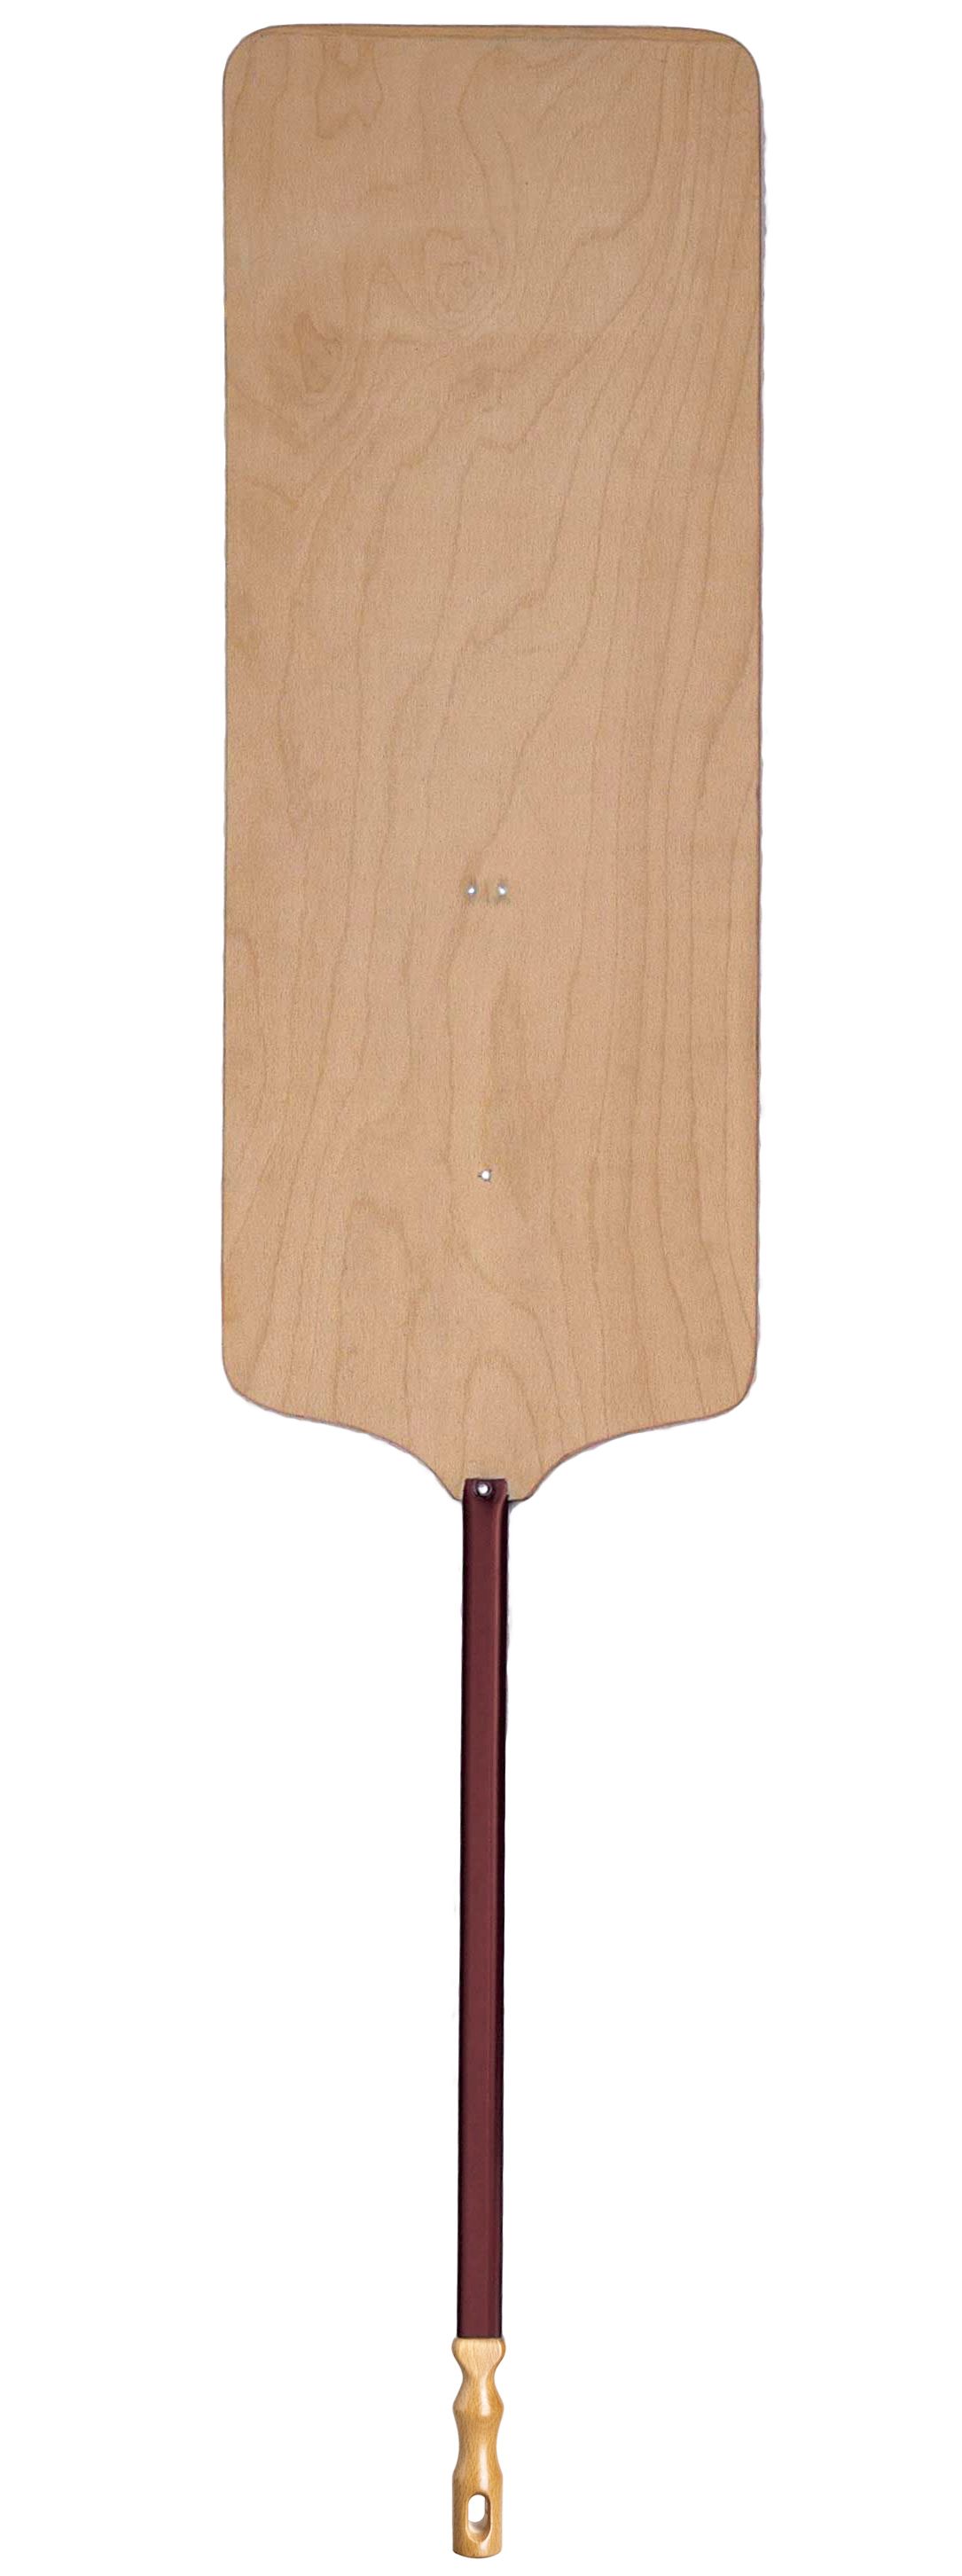 Pizzaschaufel für Meter-Pizza – Holz – 40 x 100 cm – H 170 cm